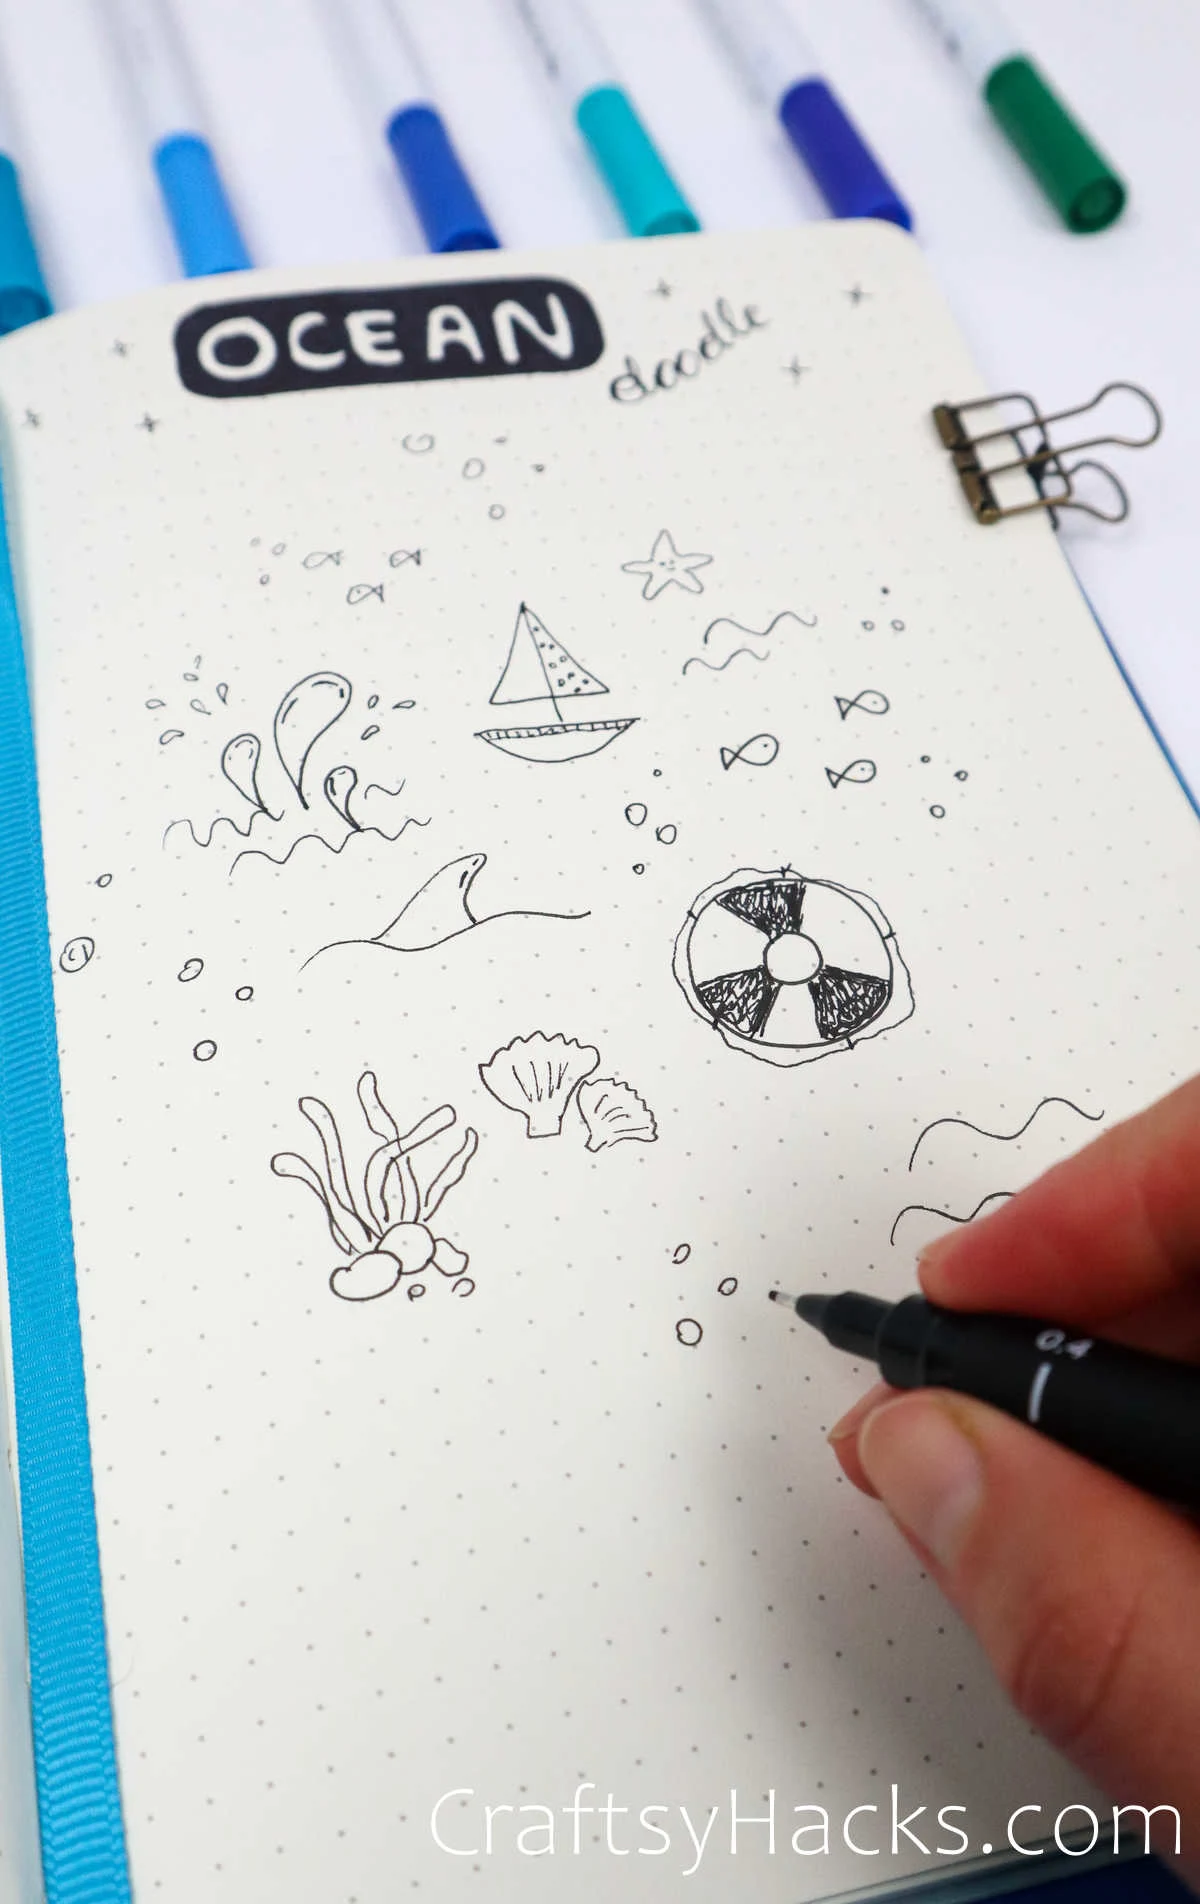 various ocean doodles